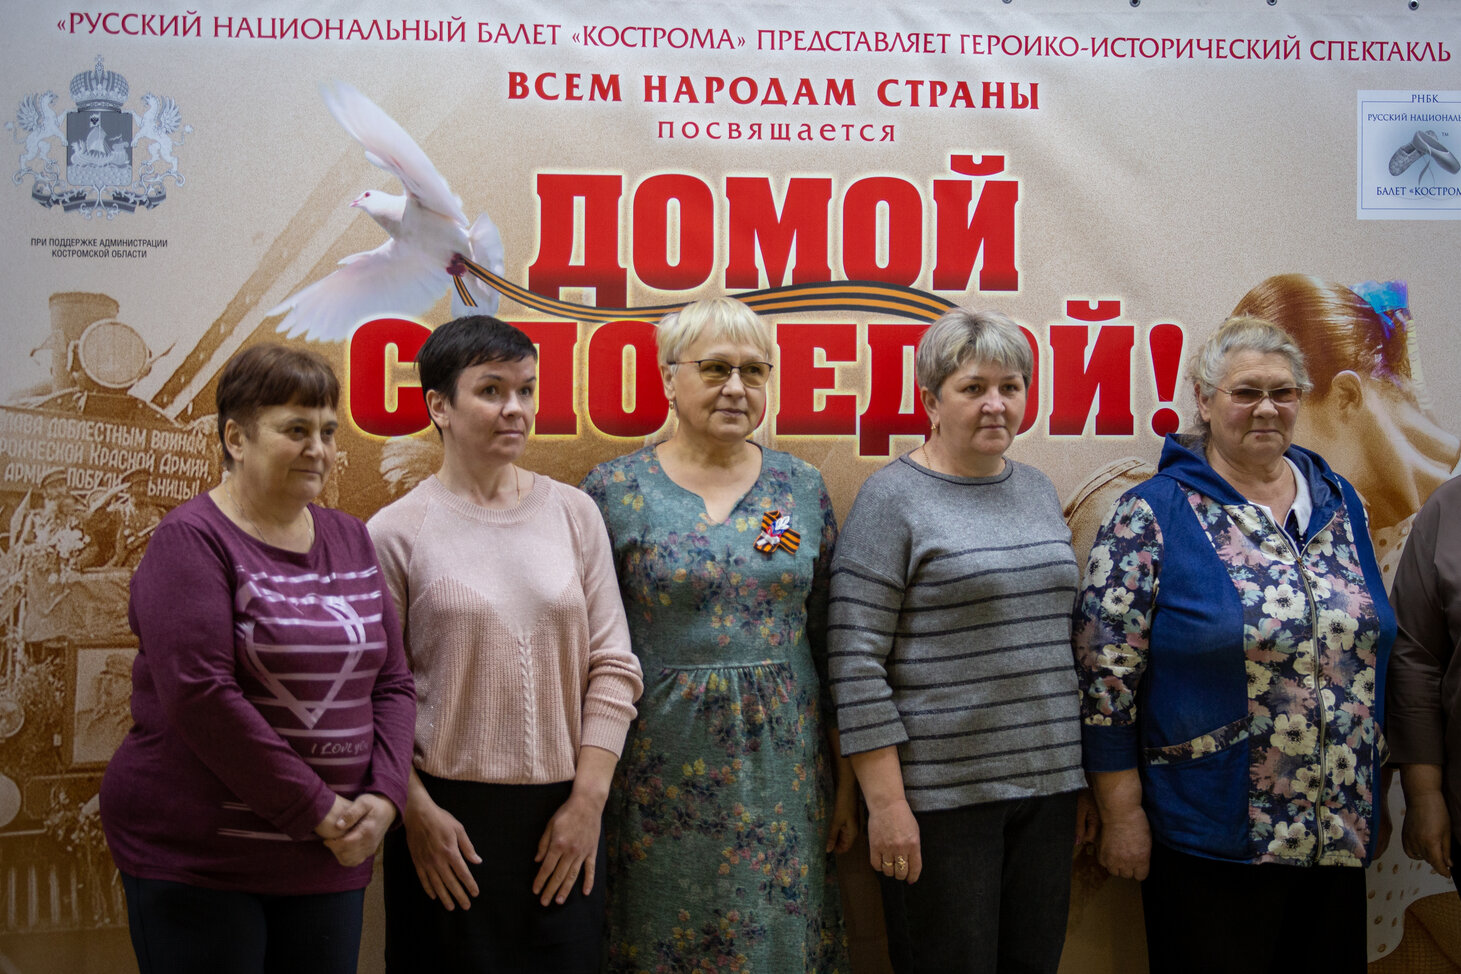 «Русский национальный балет» Кострома» представил программу «Домой с Победой!» участникам и семьям СВО из муниципальных районов Костромской области. 